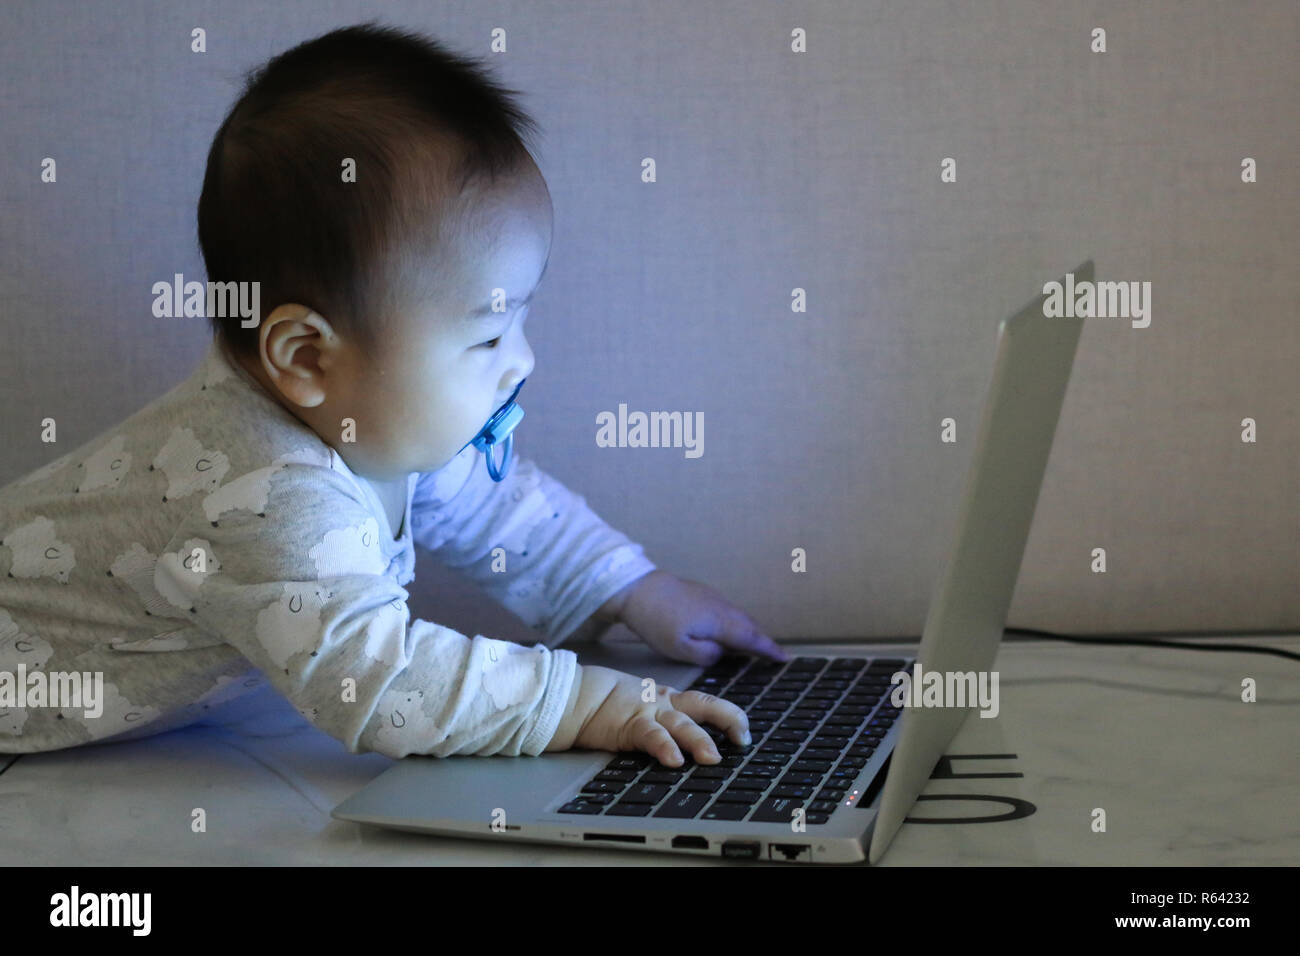 Asiatische baby arbeitet mit Laptop in der Dunkelheit Stockfoto